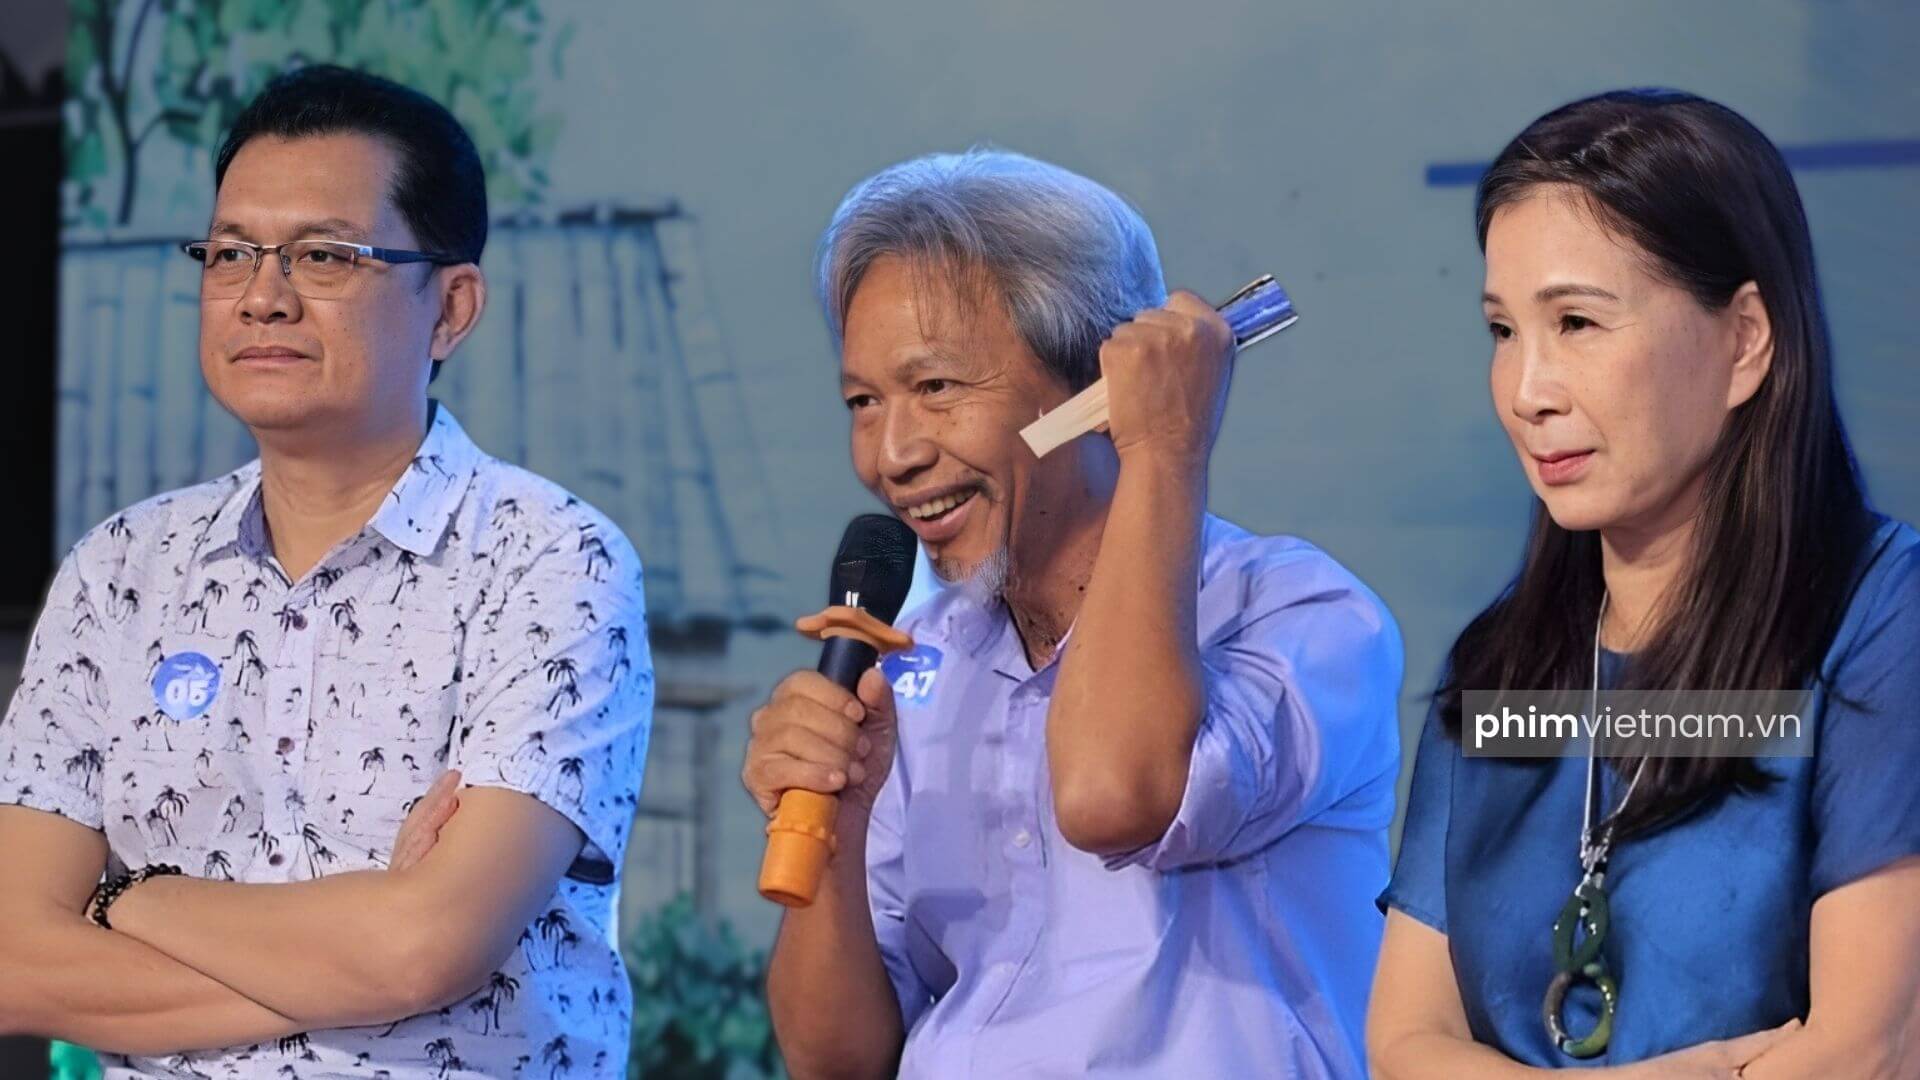 Đạo diễn Nguyễn Minh Chung và các diễn viên tại một buổi họp báo